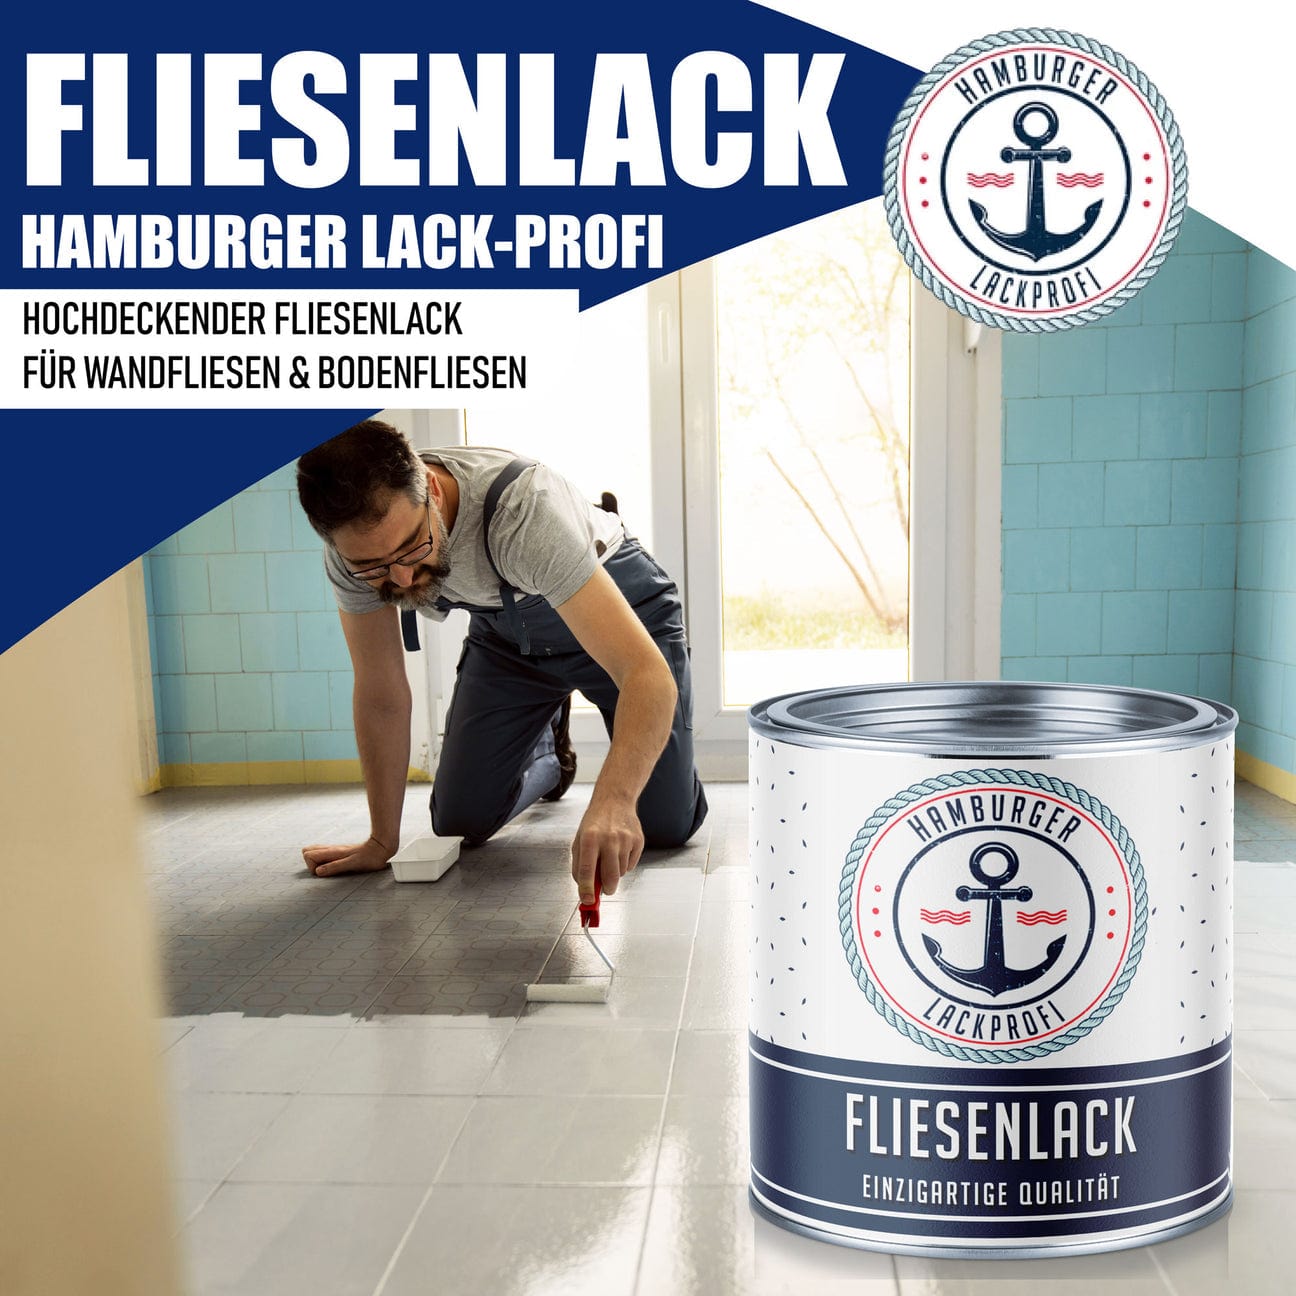 Hamburger Lack-Profi Hamburger Lack-Profi Fliesenlack Gelboliv RAL 6014 - hochdeckende Fliesenfarbe Grün